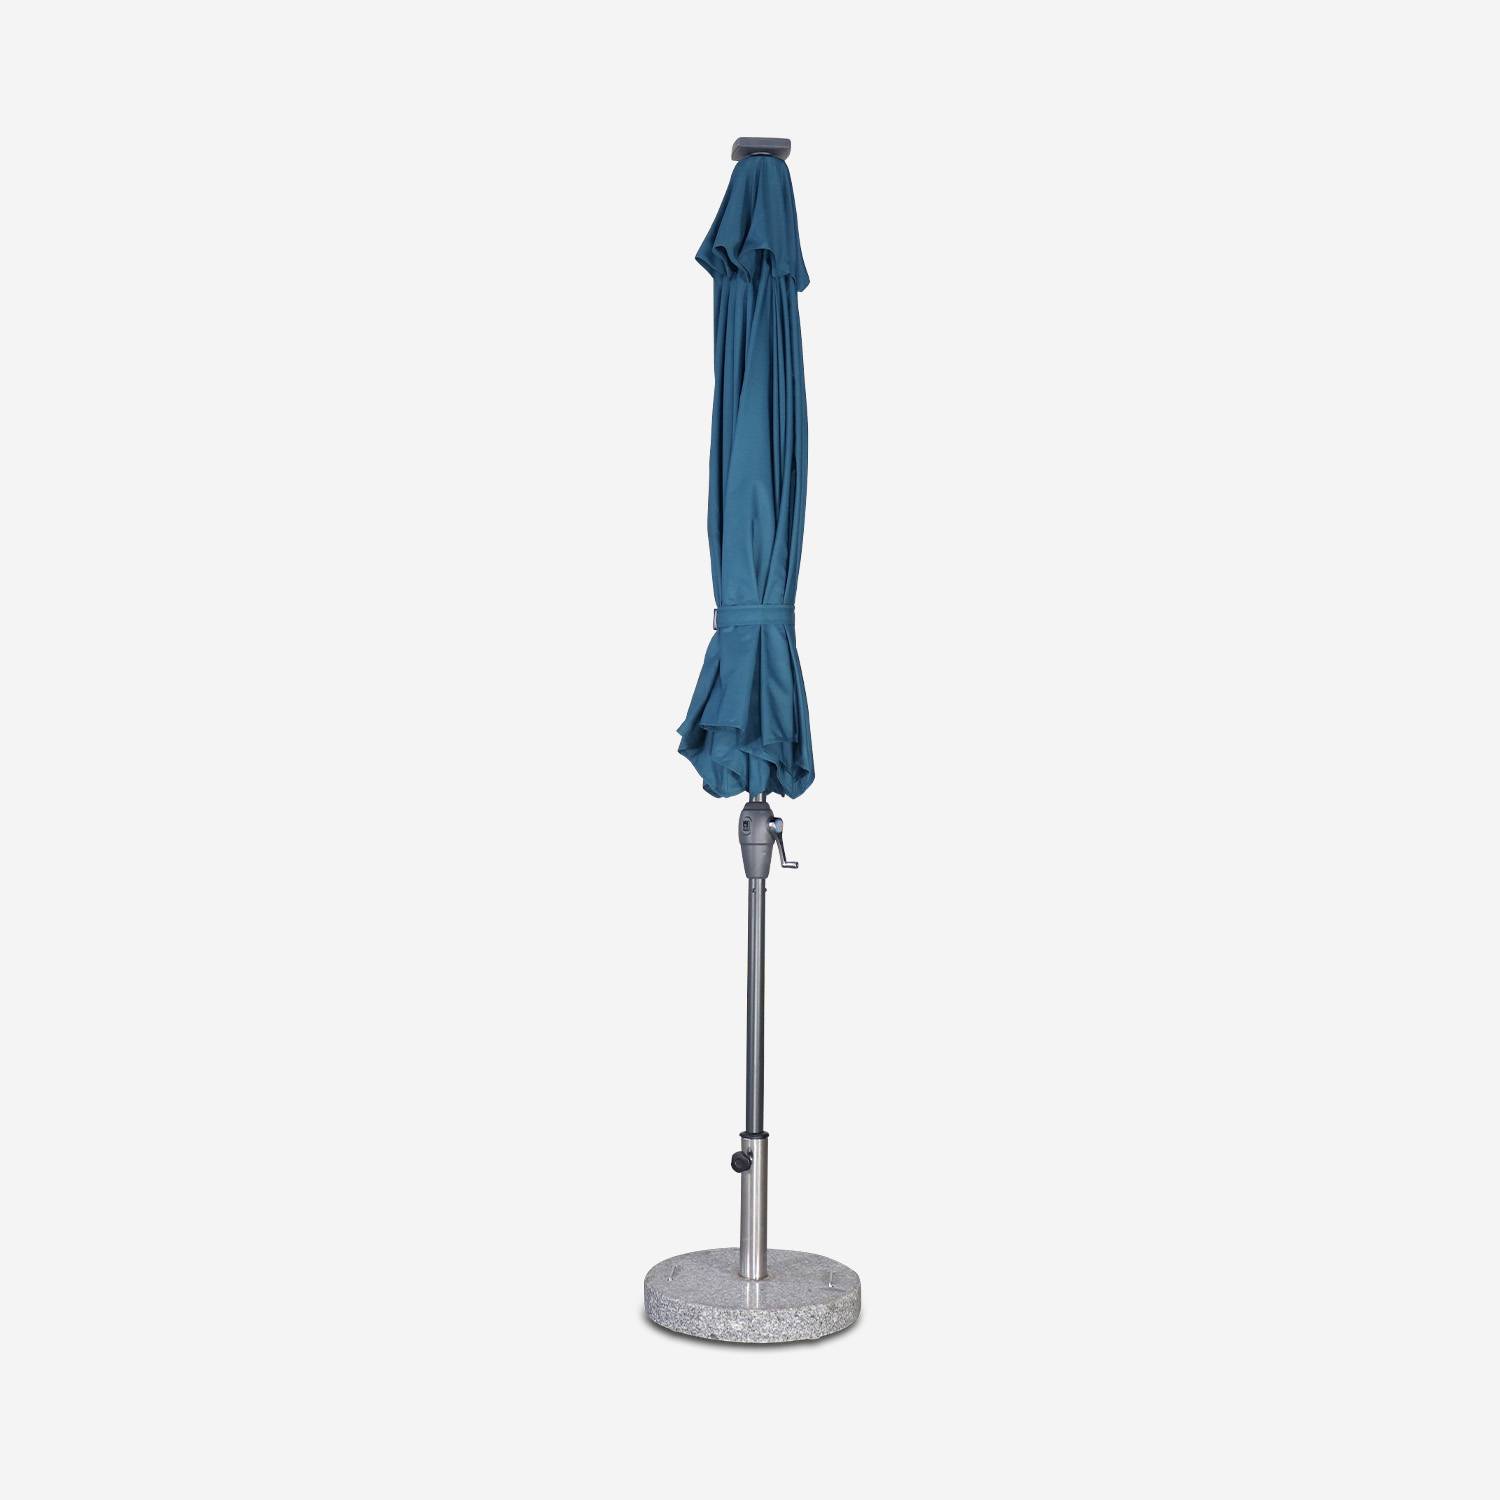 Ronde LED parasol  Ø 2,7m - Helios Donker turquoise - Stokparasol met geïntegreerde verlichting en hendel Photo4